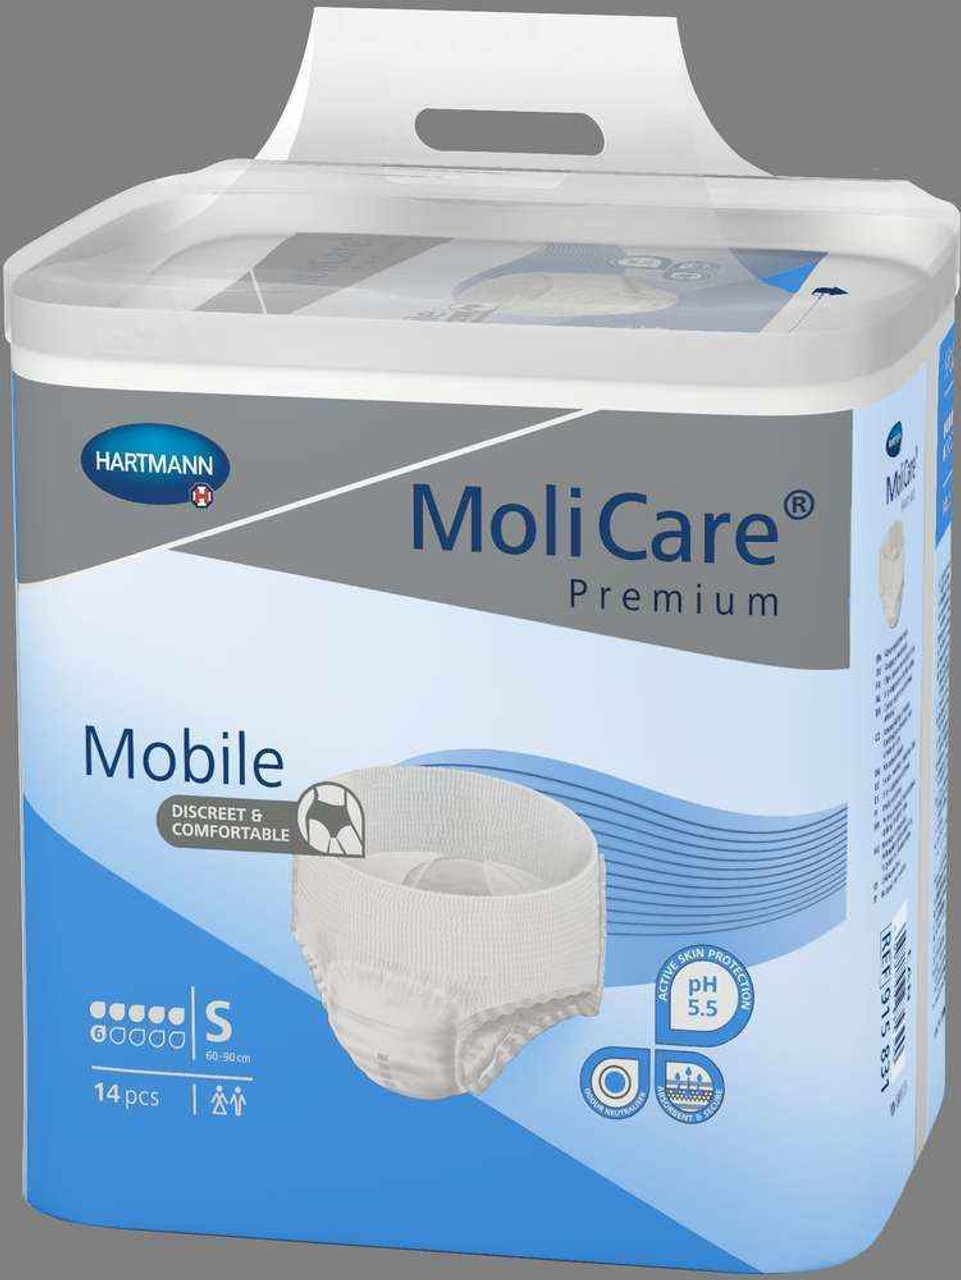 Molicare Premium Mobile 6 Drop Small